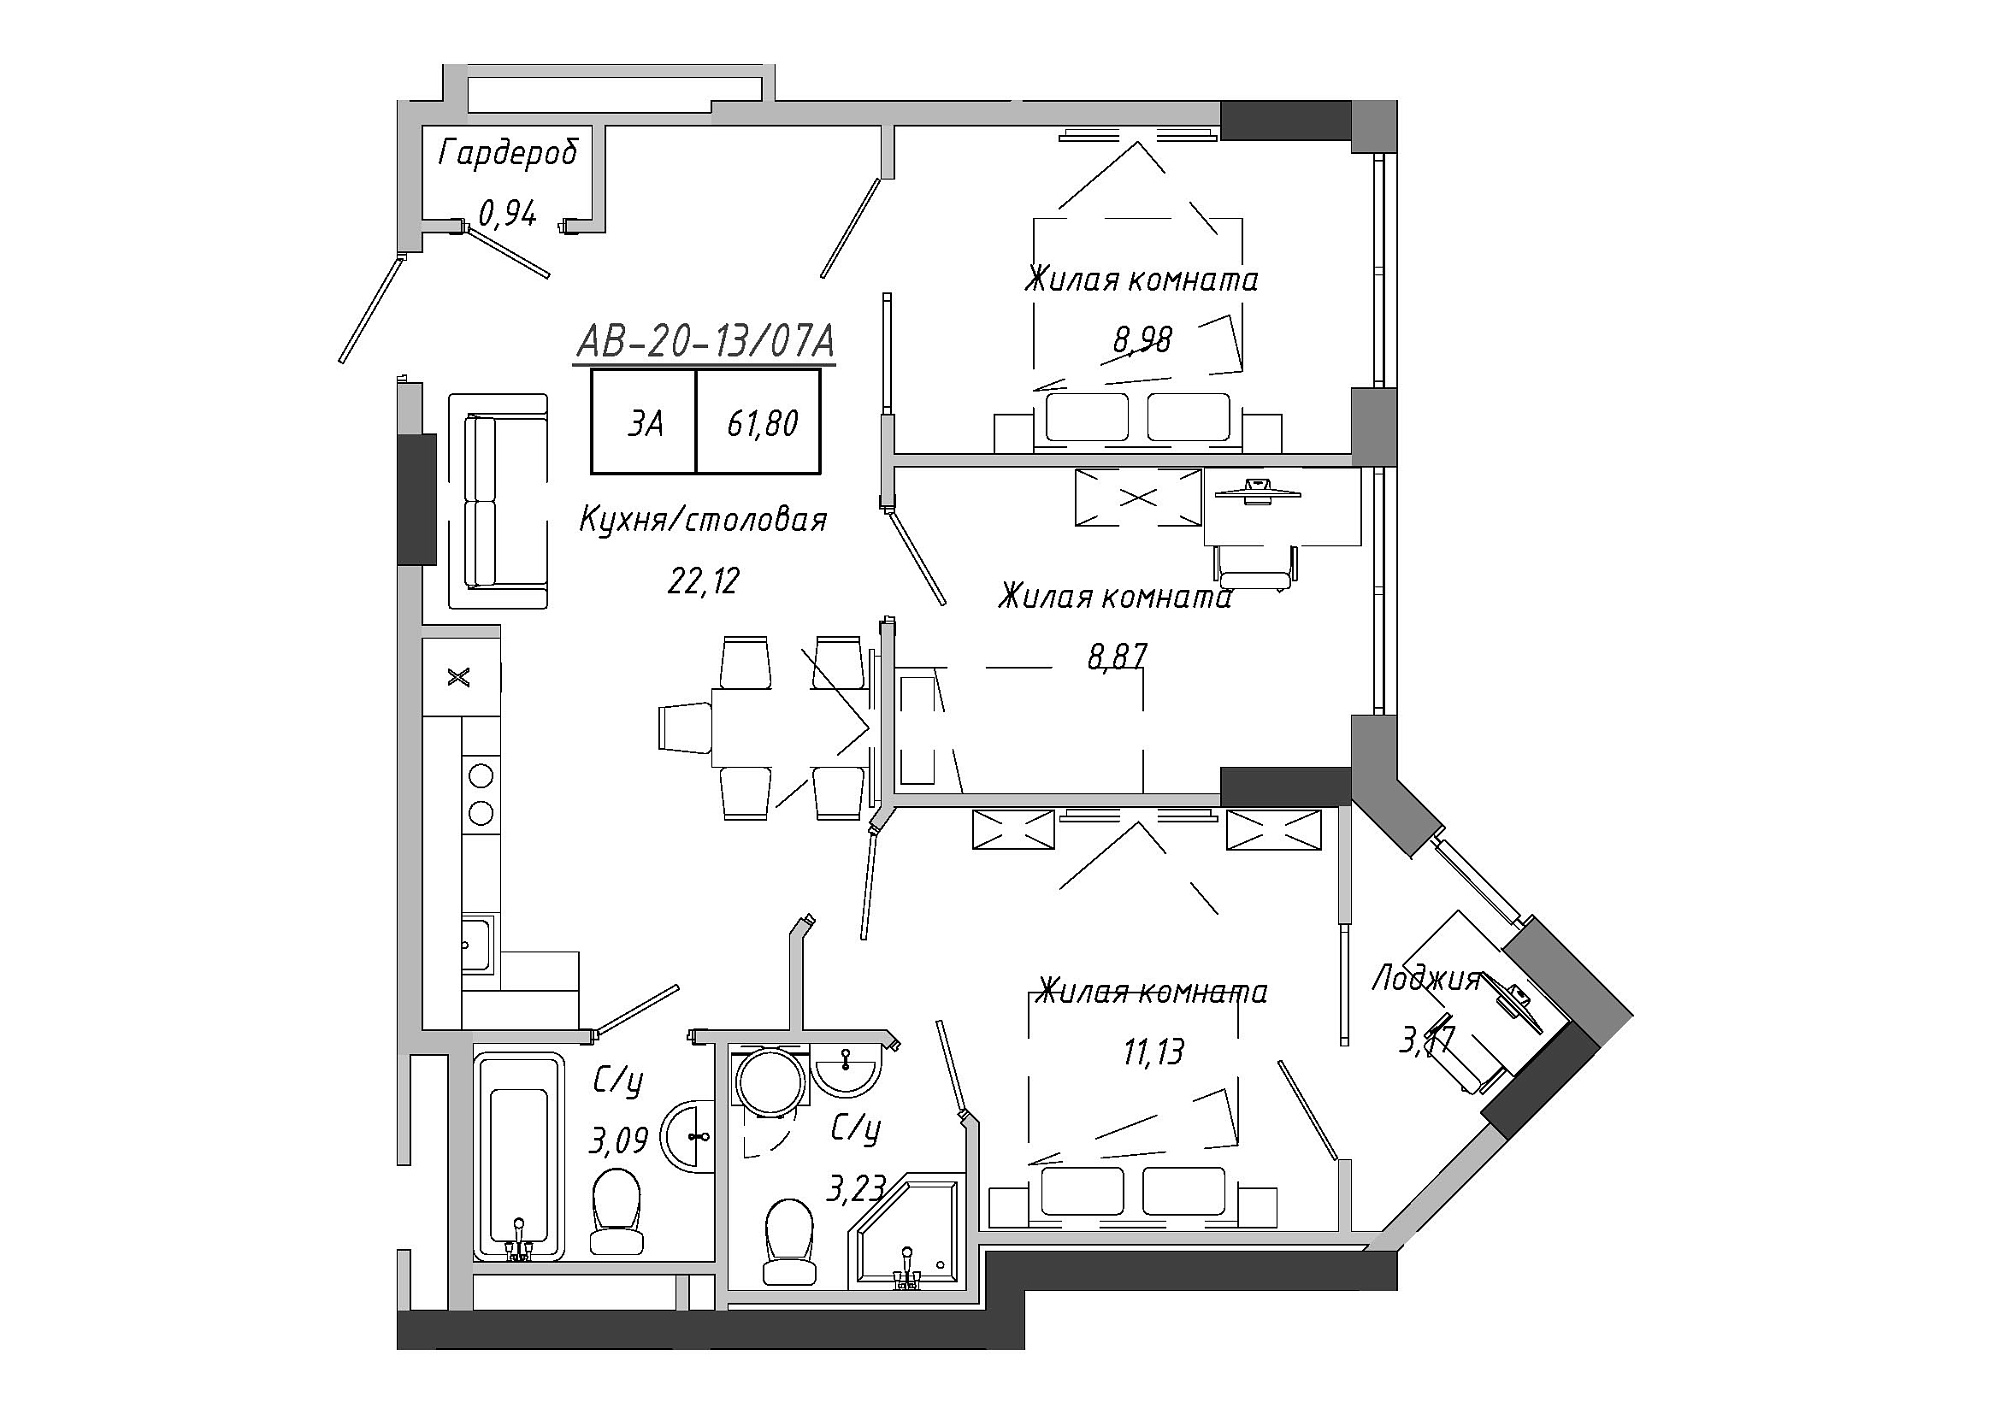 Планування 3-к квартира площею 61.8м2, AB-20-13/0107a.